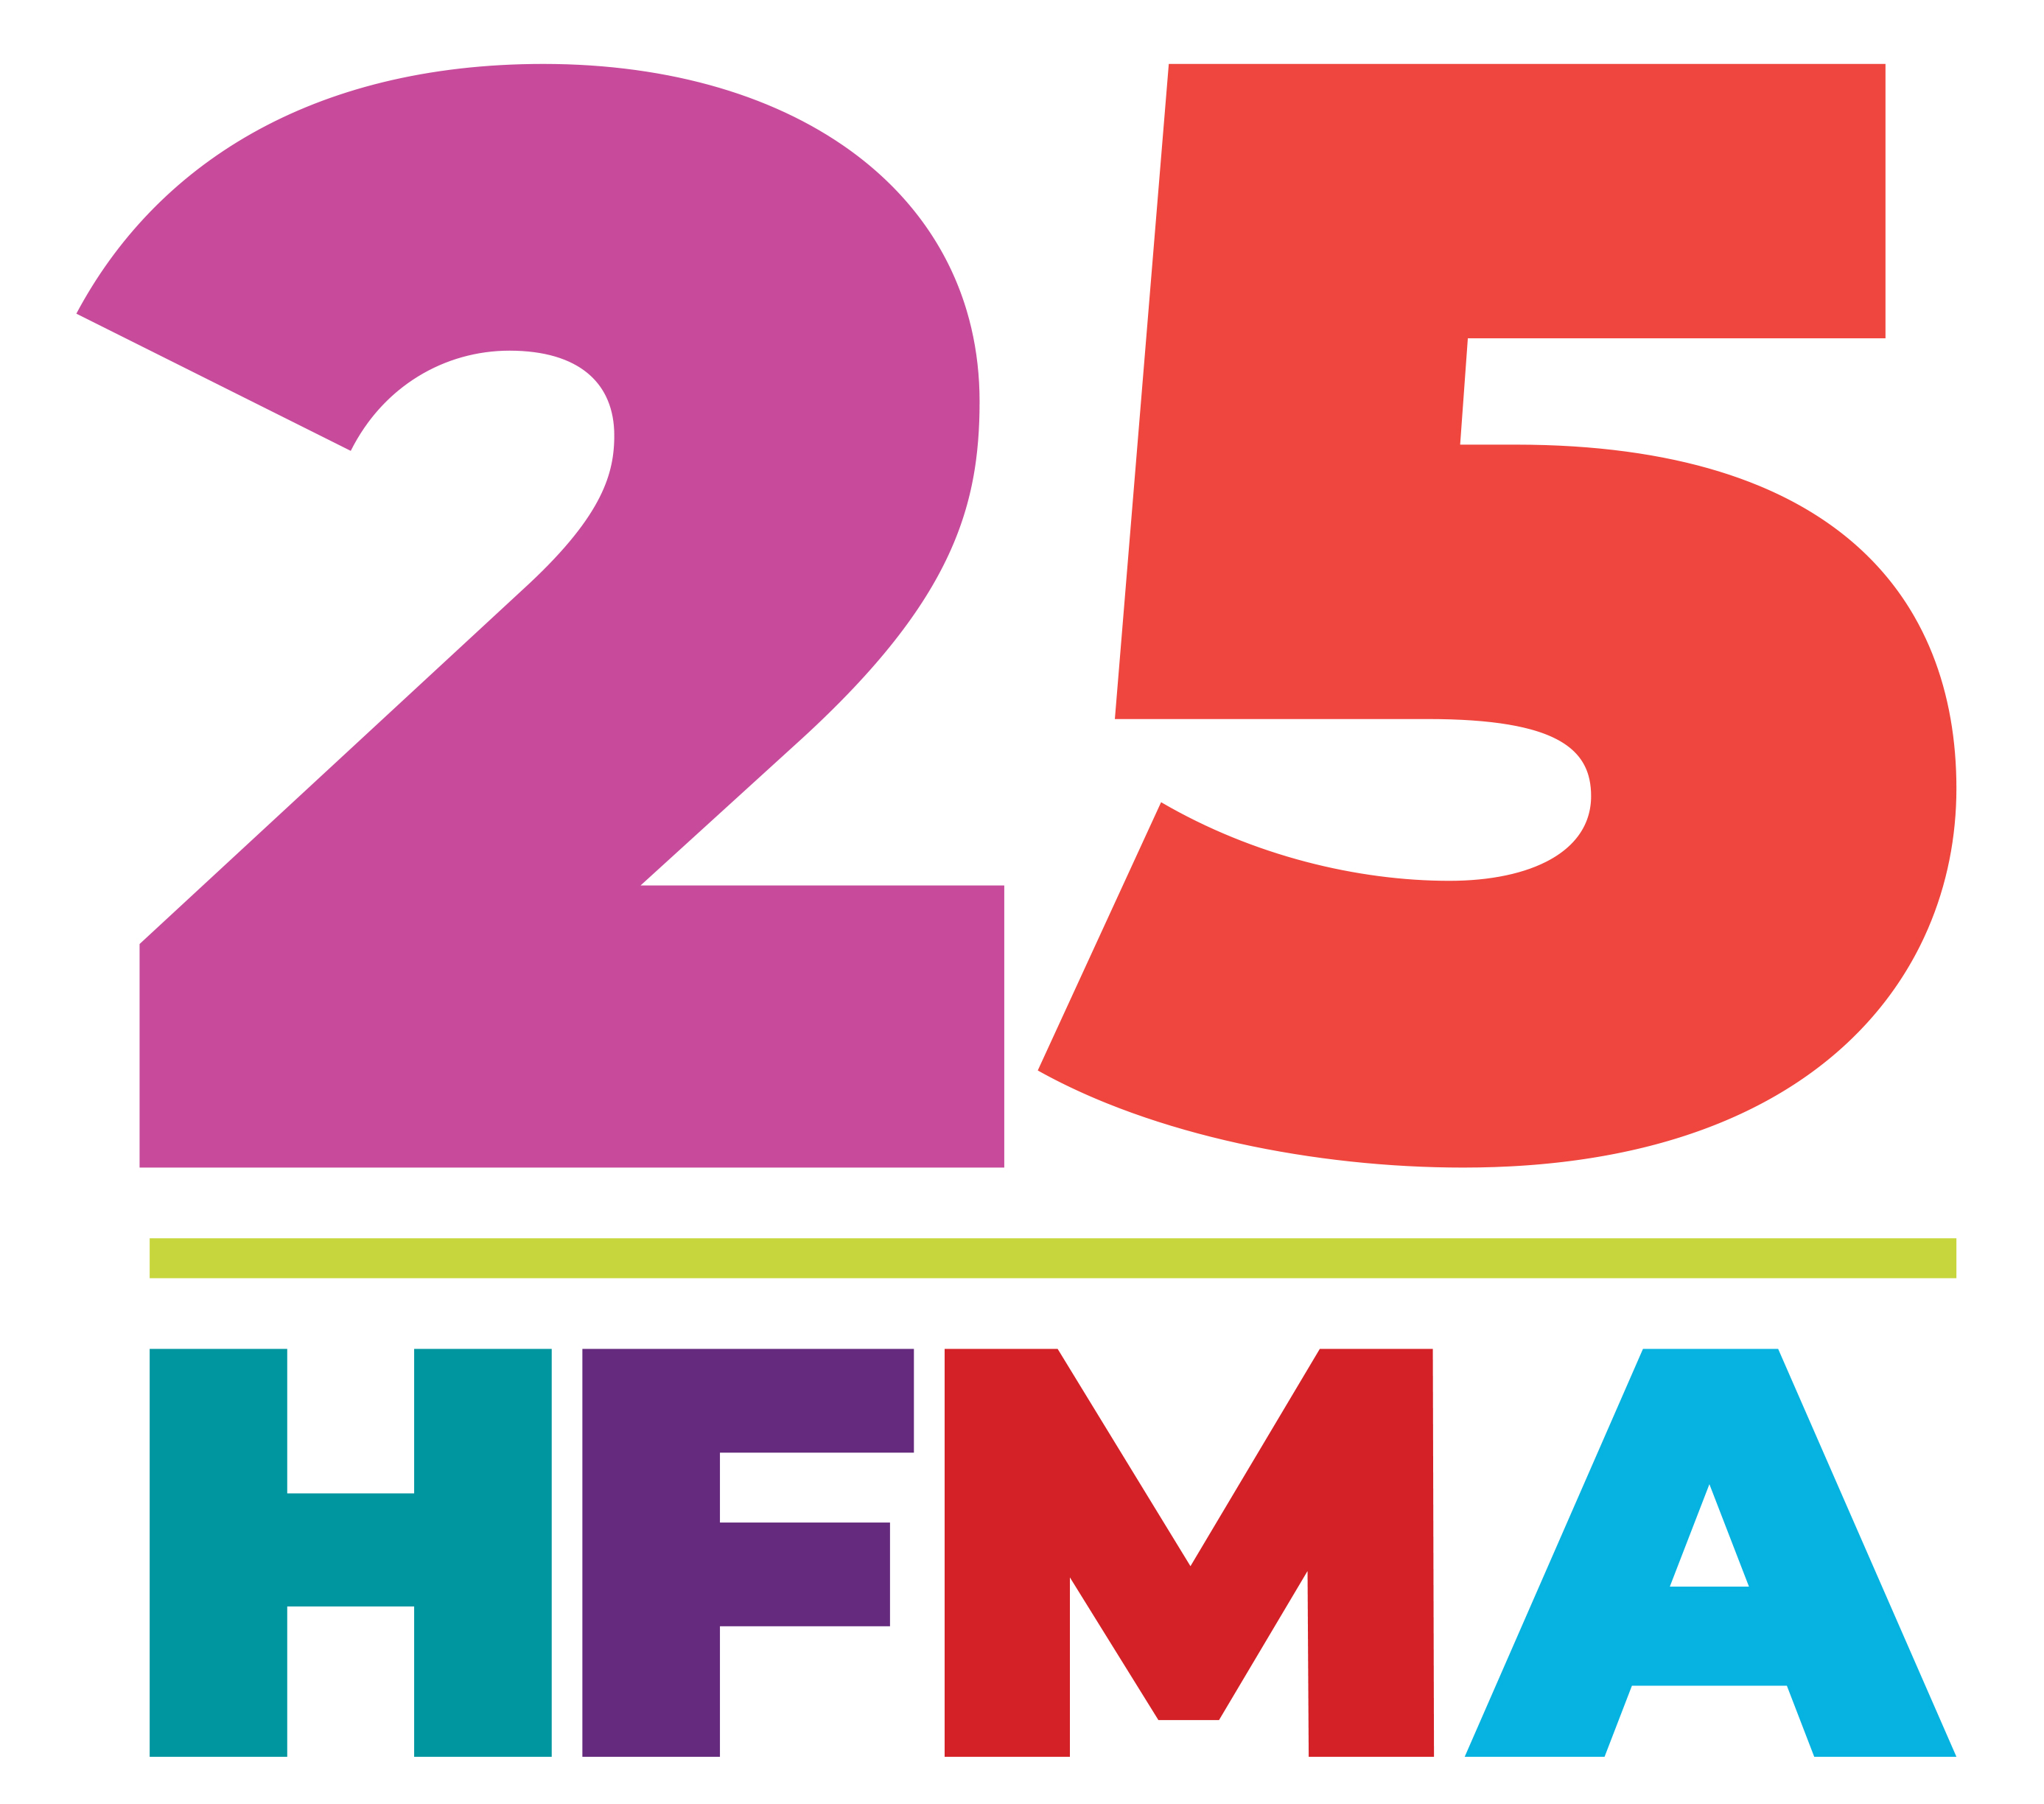 HFMA at 25 logo